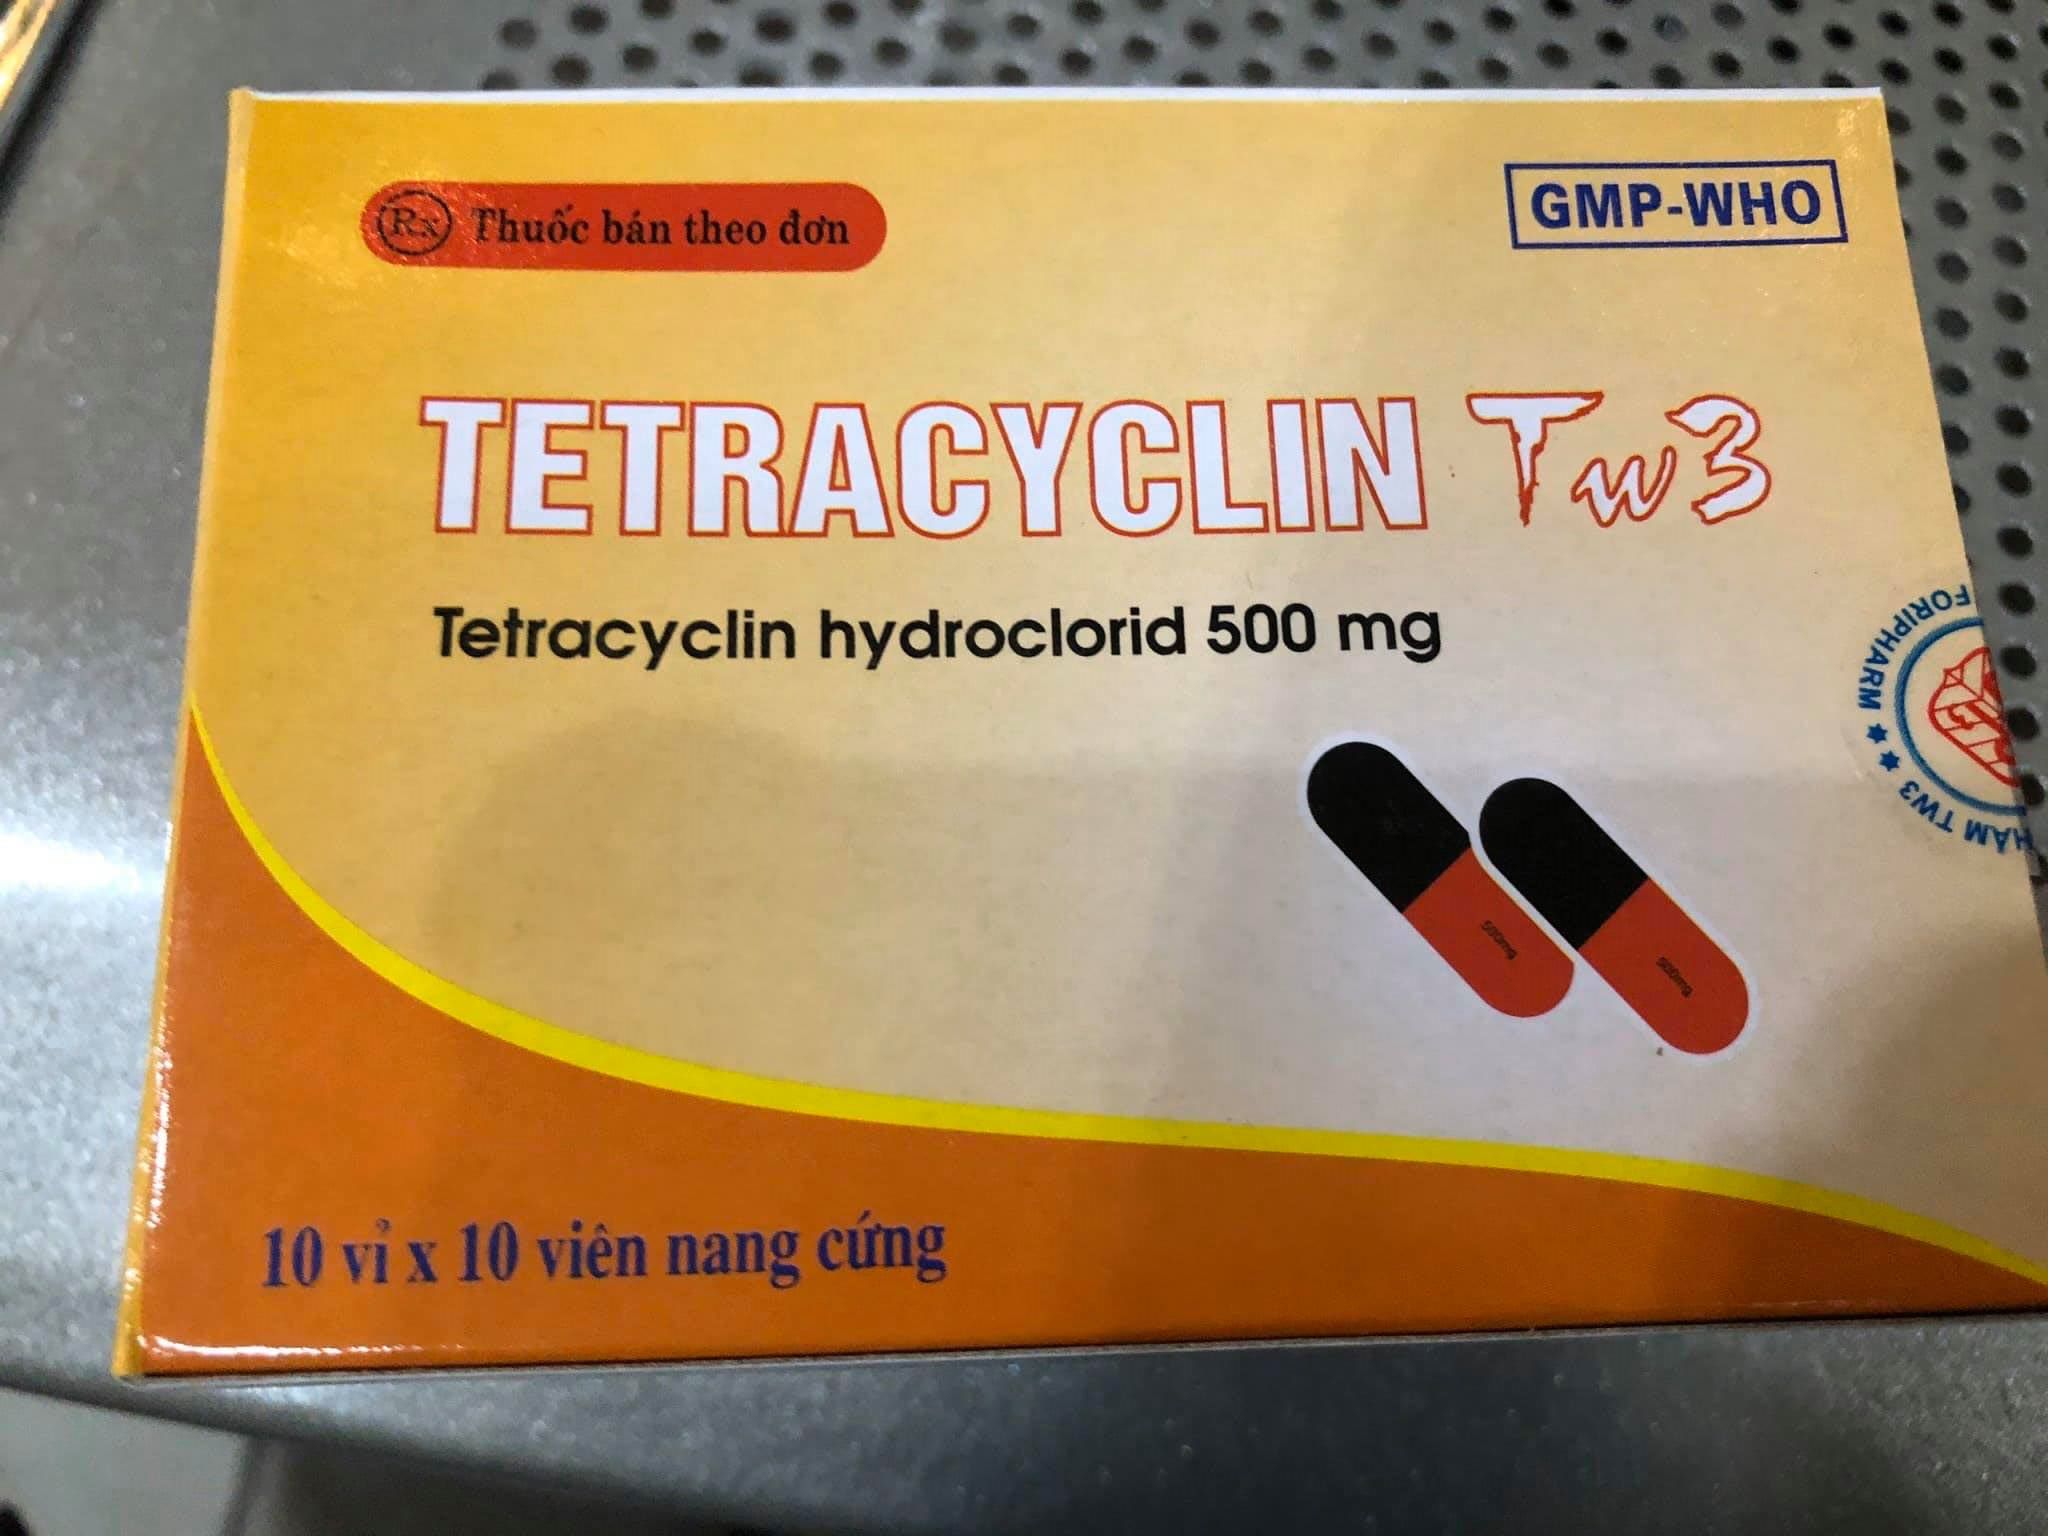 Tetracyclin Tw3 500mg